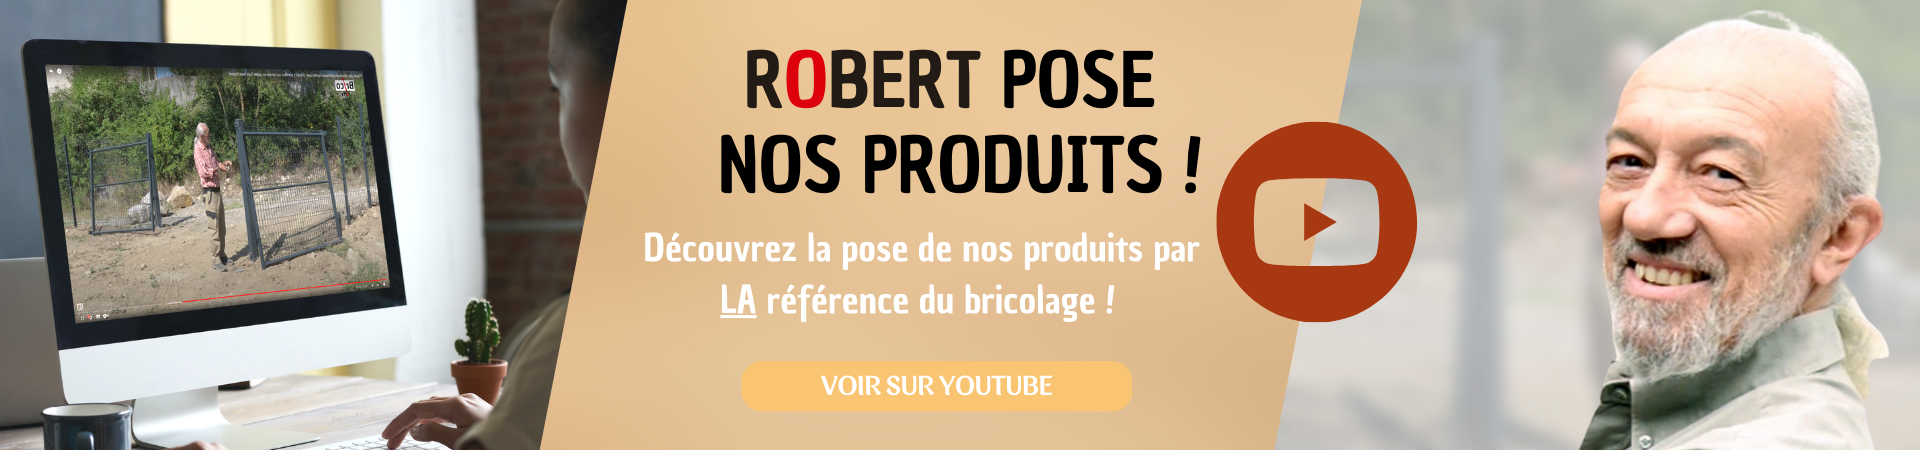 Robert pose nos produits. Découvrez notre vidéo sur Youtube.